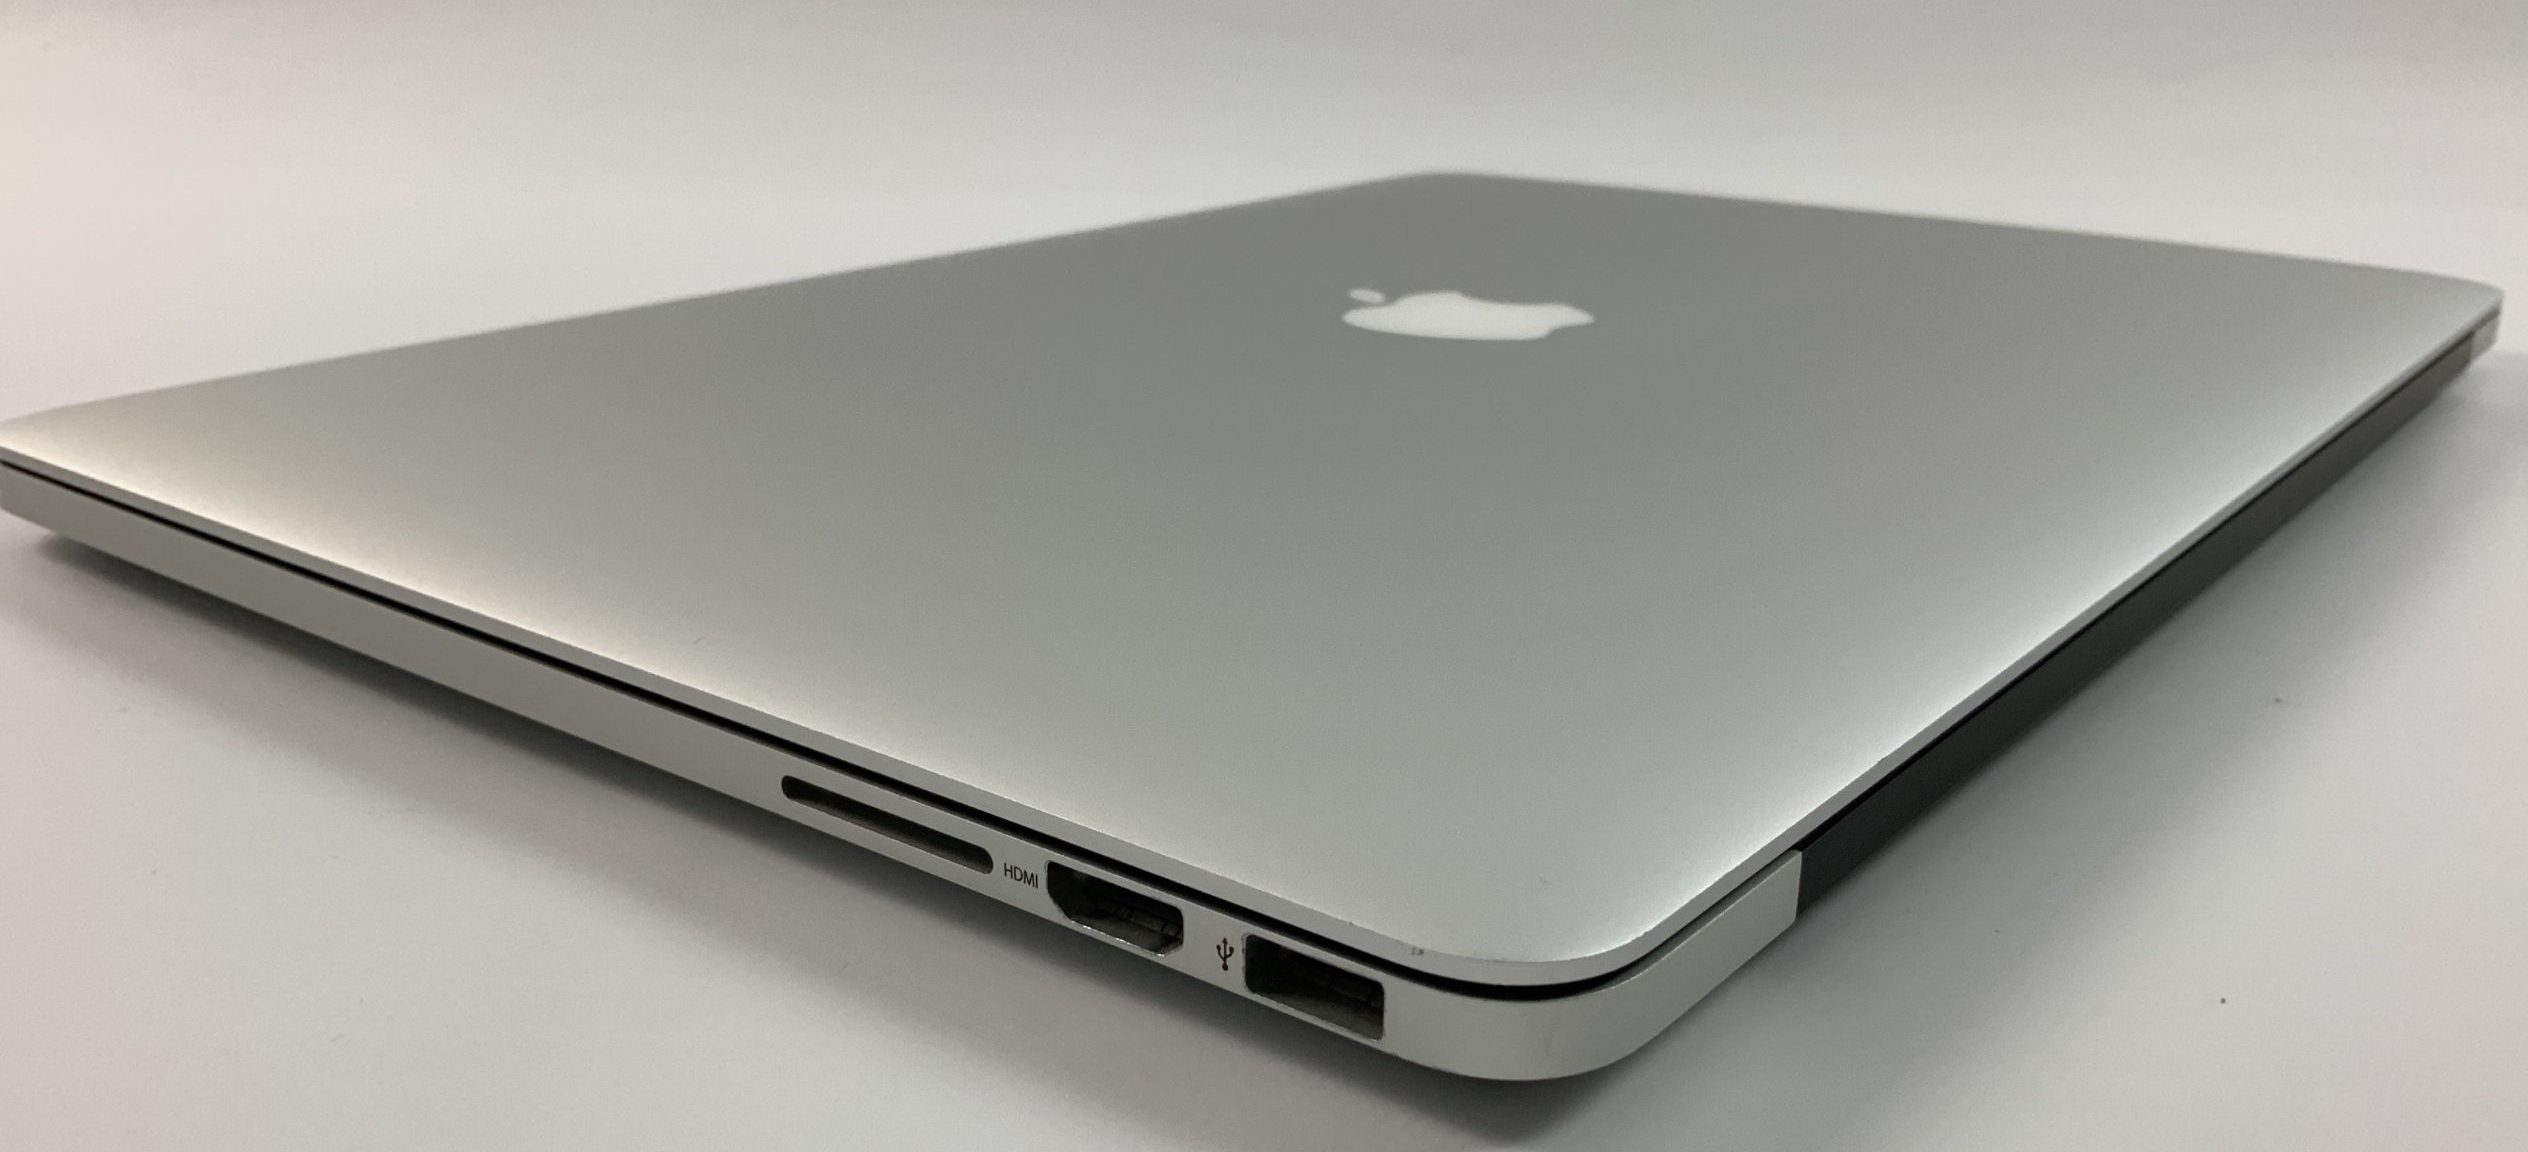 MacBook Pro Retina 15" Mid 2014 (Intel Quad-Core i7 2.5 GHz 16 GB RAM 512 GB SSD), Intel Quad-Core i7 2.5 GHz, 16 GB RAM, 512 GB SSD, obraz 3